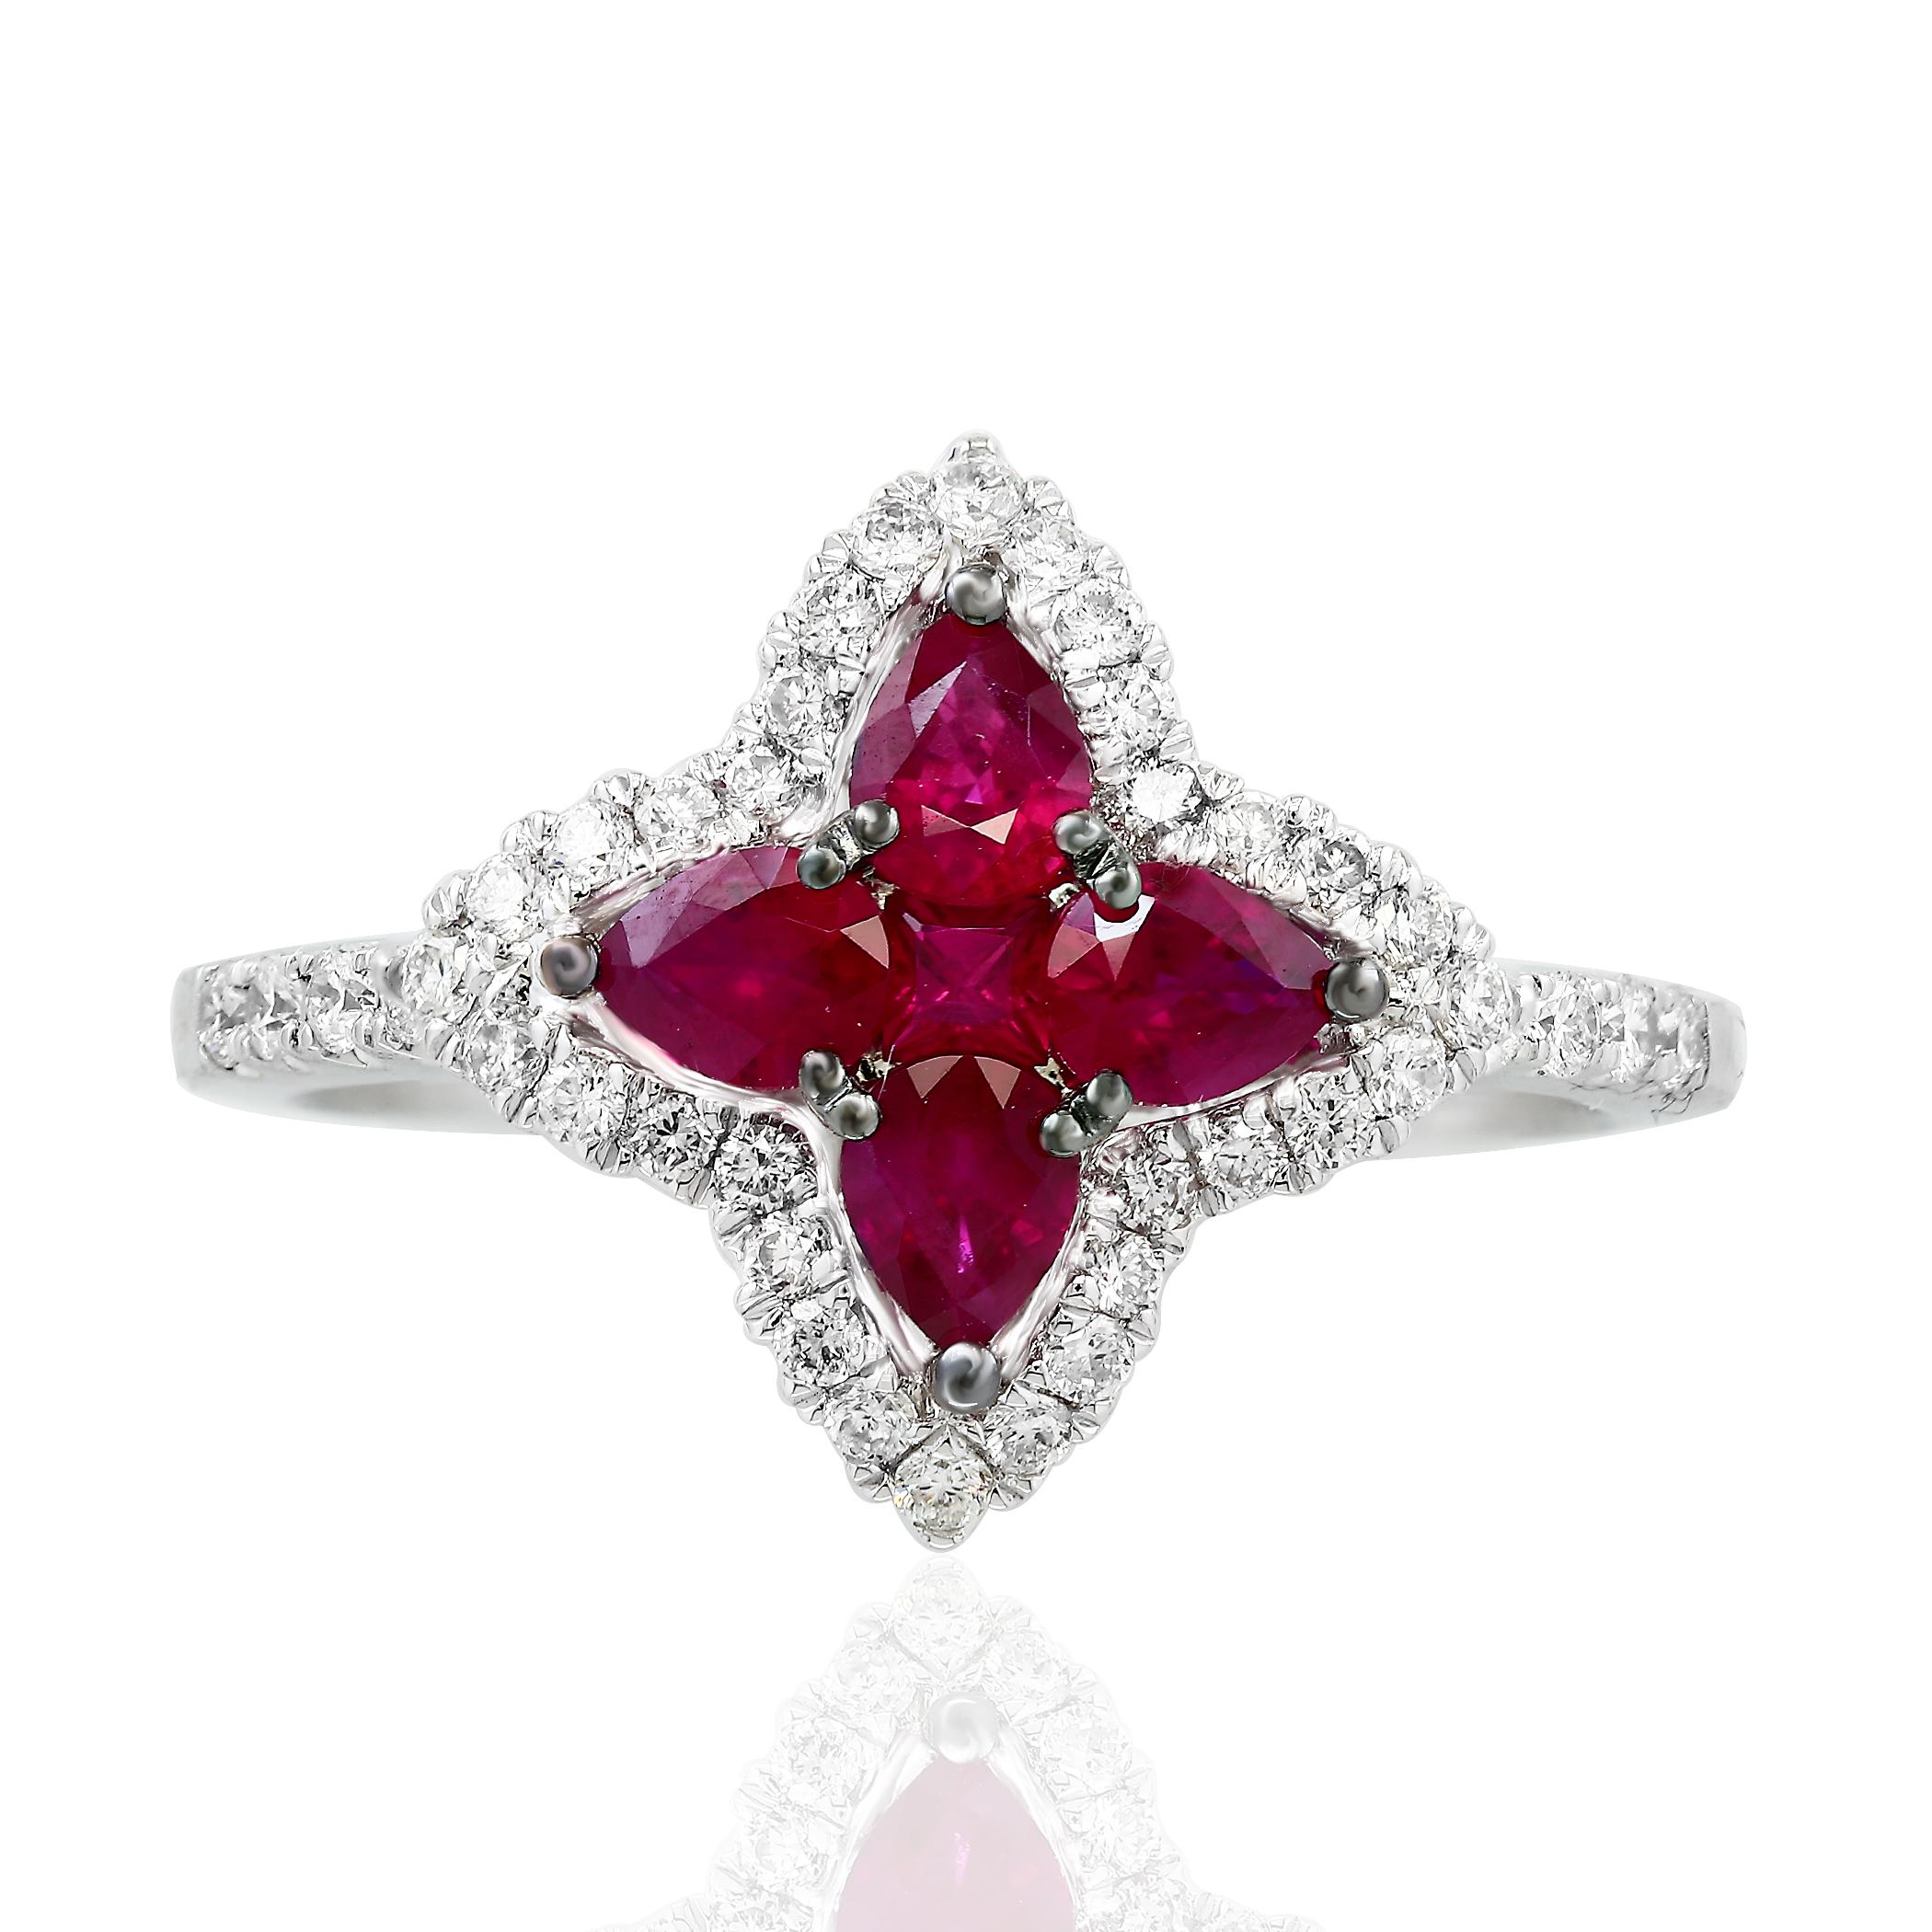 Farbiger Ring im Blumendesign mit 4 birnenförmigen Rubinen mit einem Gesamtgewicht von 0,70 Karat und 1 rundem Rubin mit einem Gewicht von 0,06 Karat, akzentuiert durch eine Reihe von runden Brillanten. Die Diamanten wiegen insgesamt 0,35 Karat.